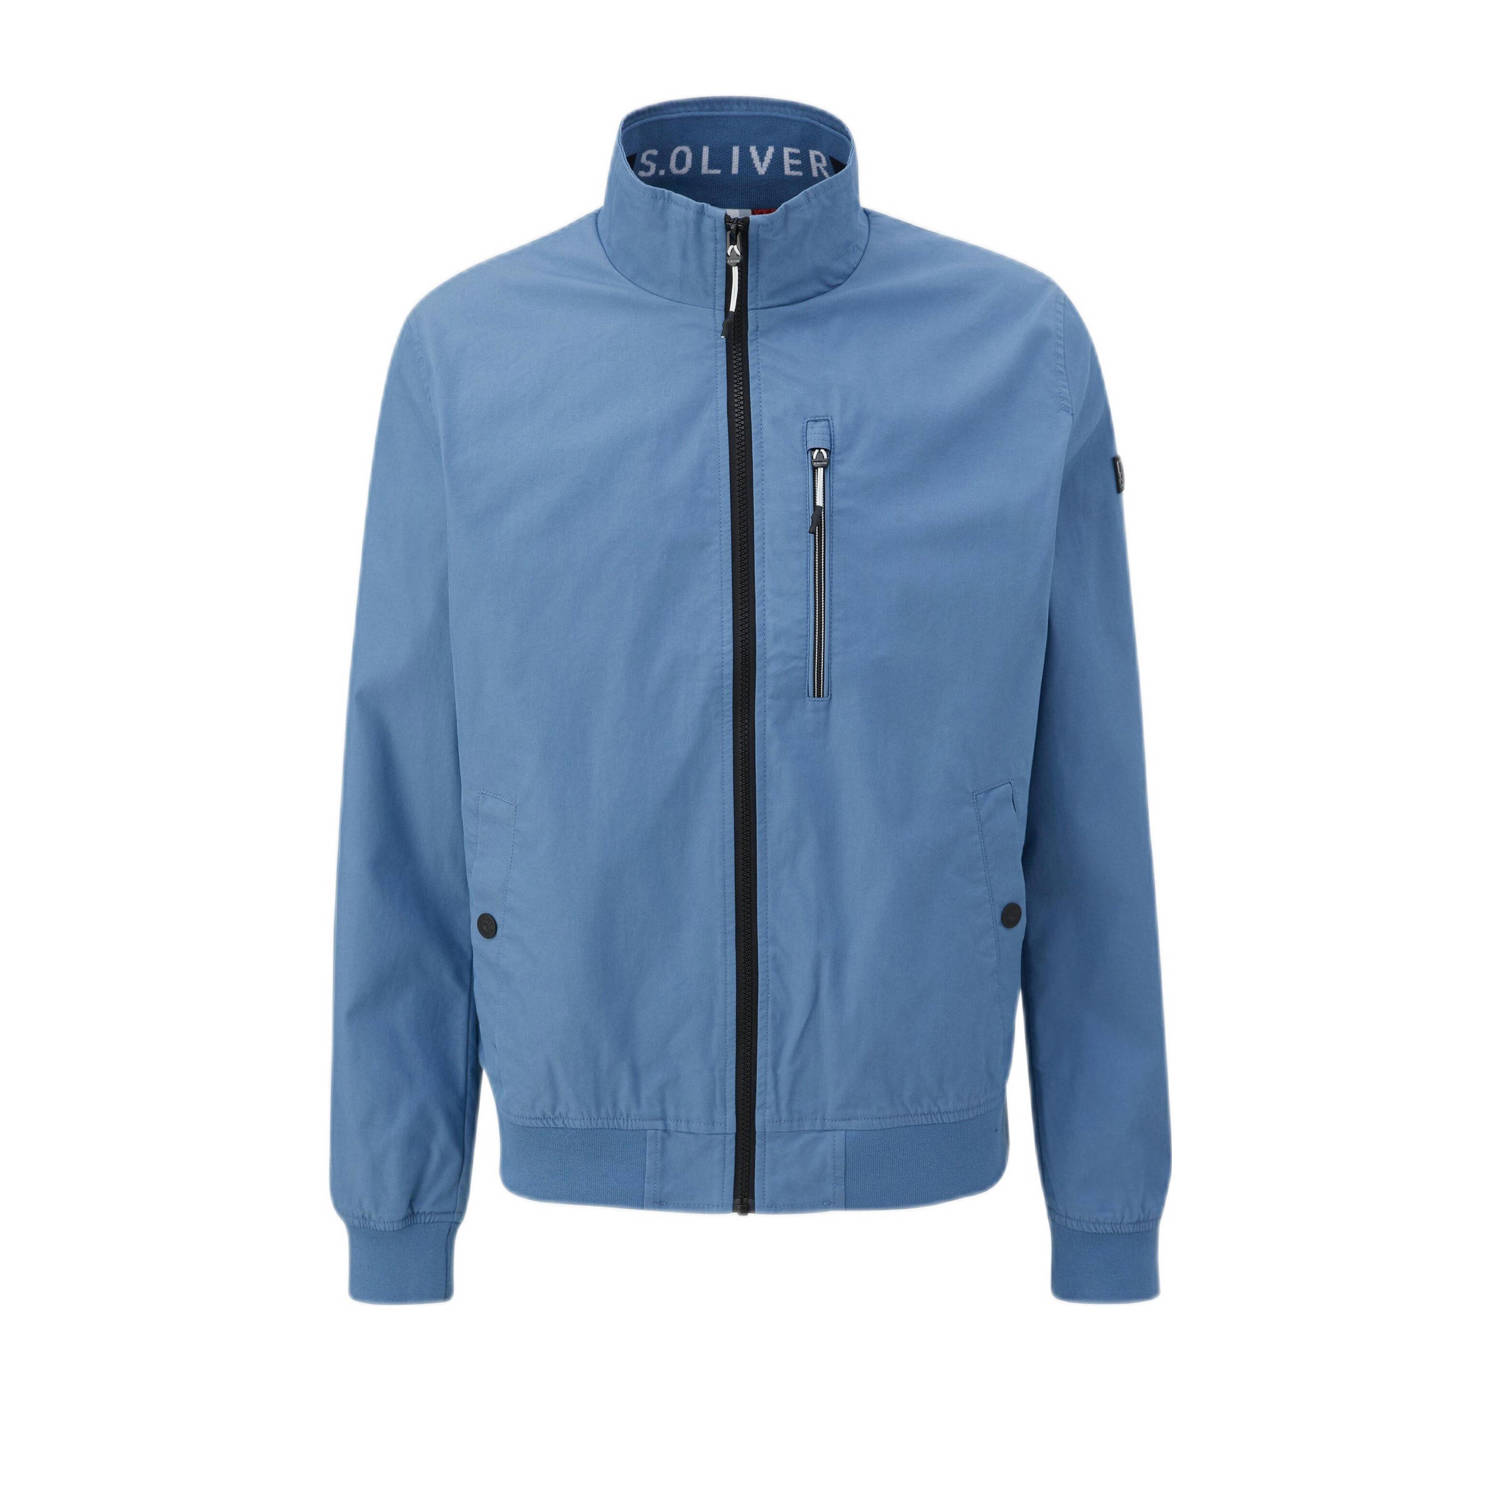 S.Oliver jas met logo lichtblauw